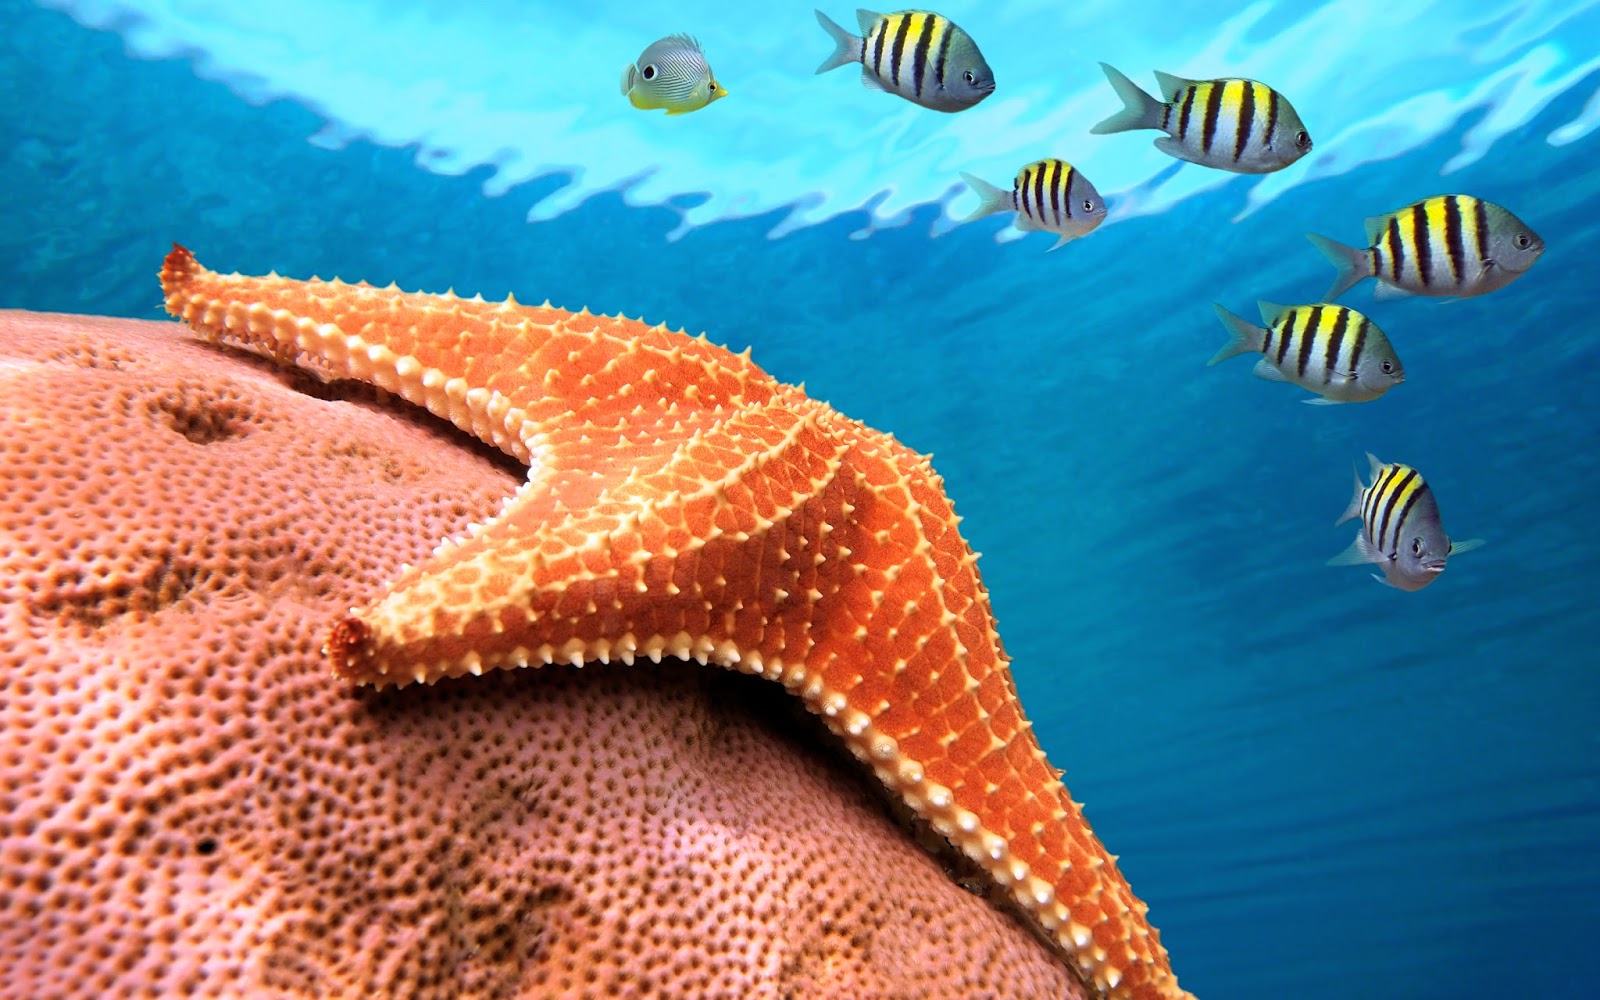 starfish wallpaper,marine biology,starfish,fish,organism,underwater